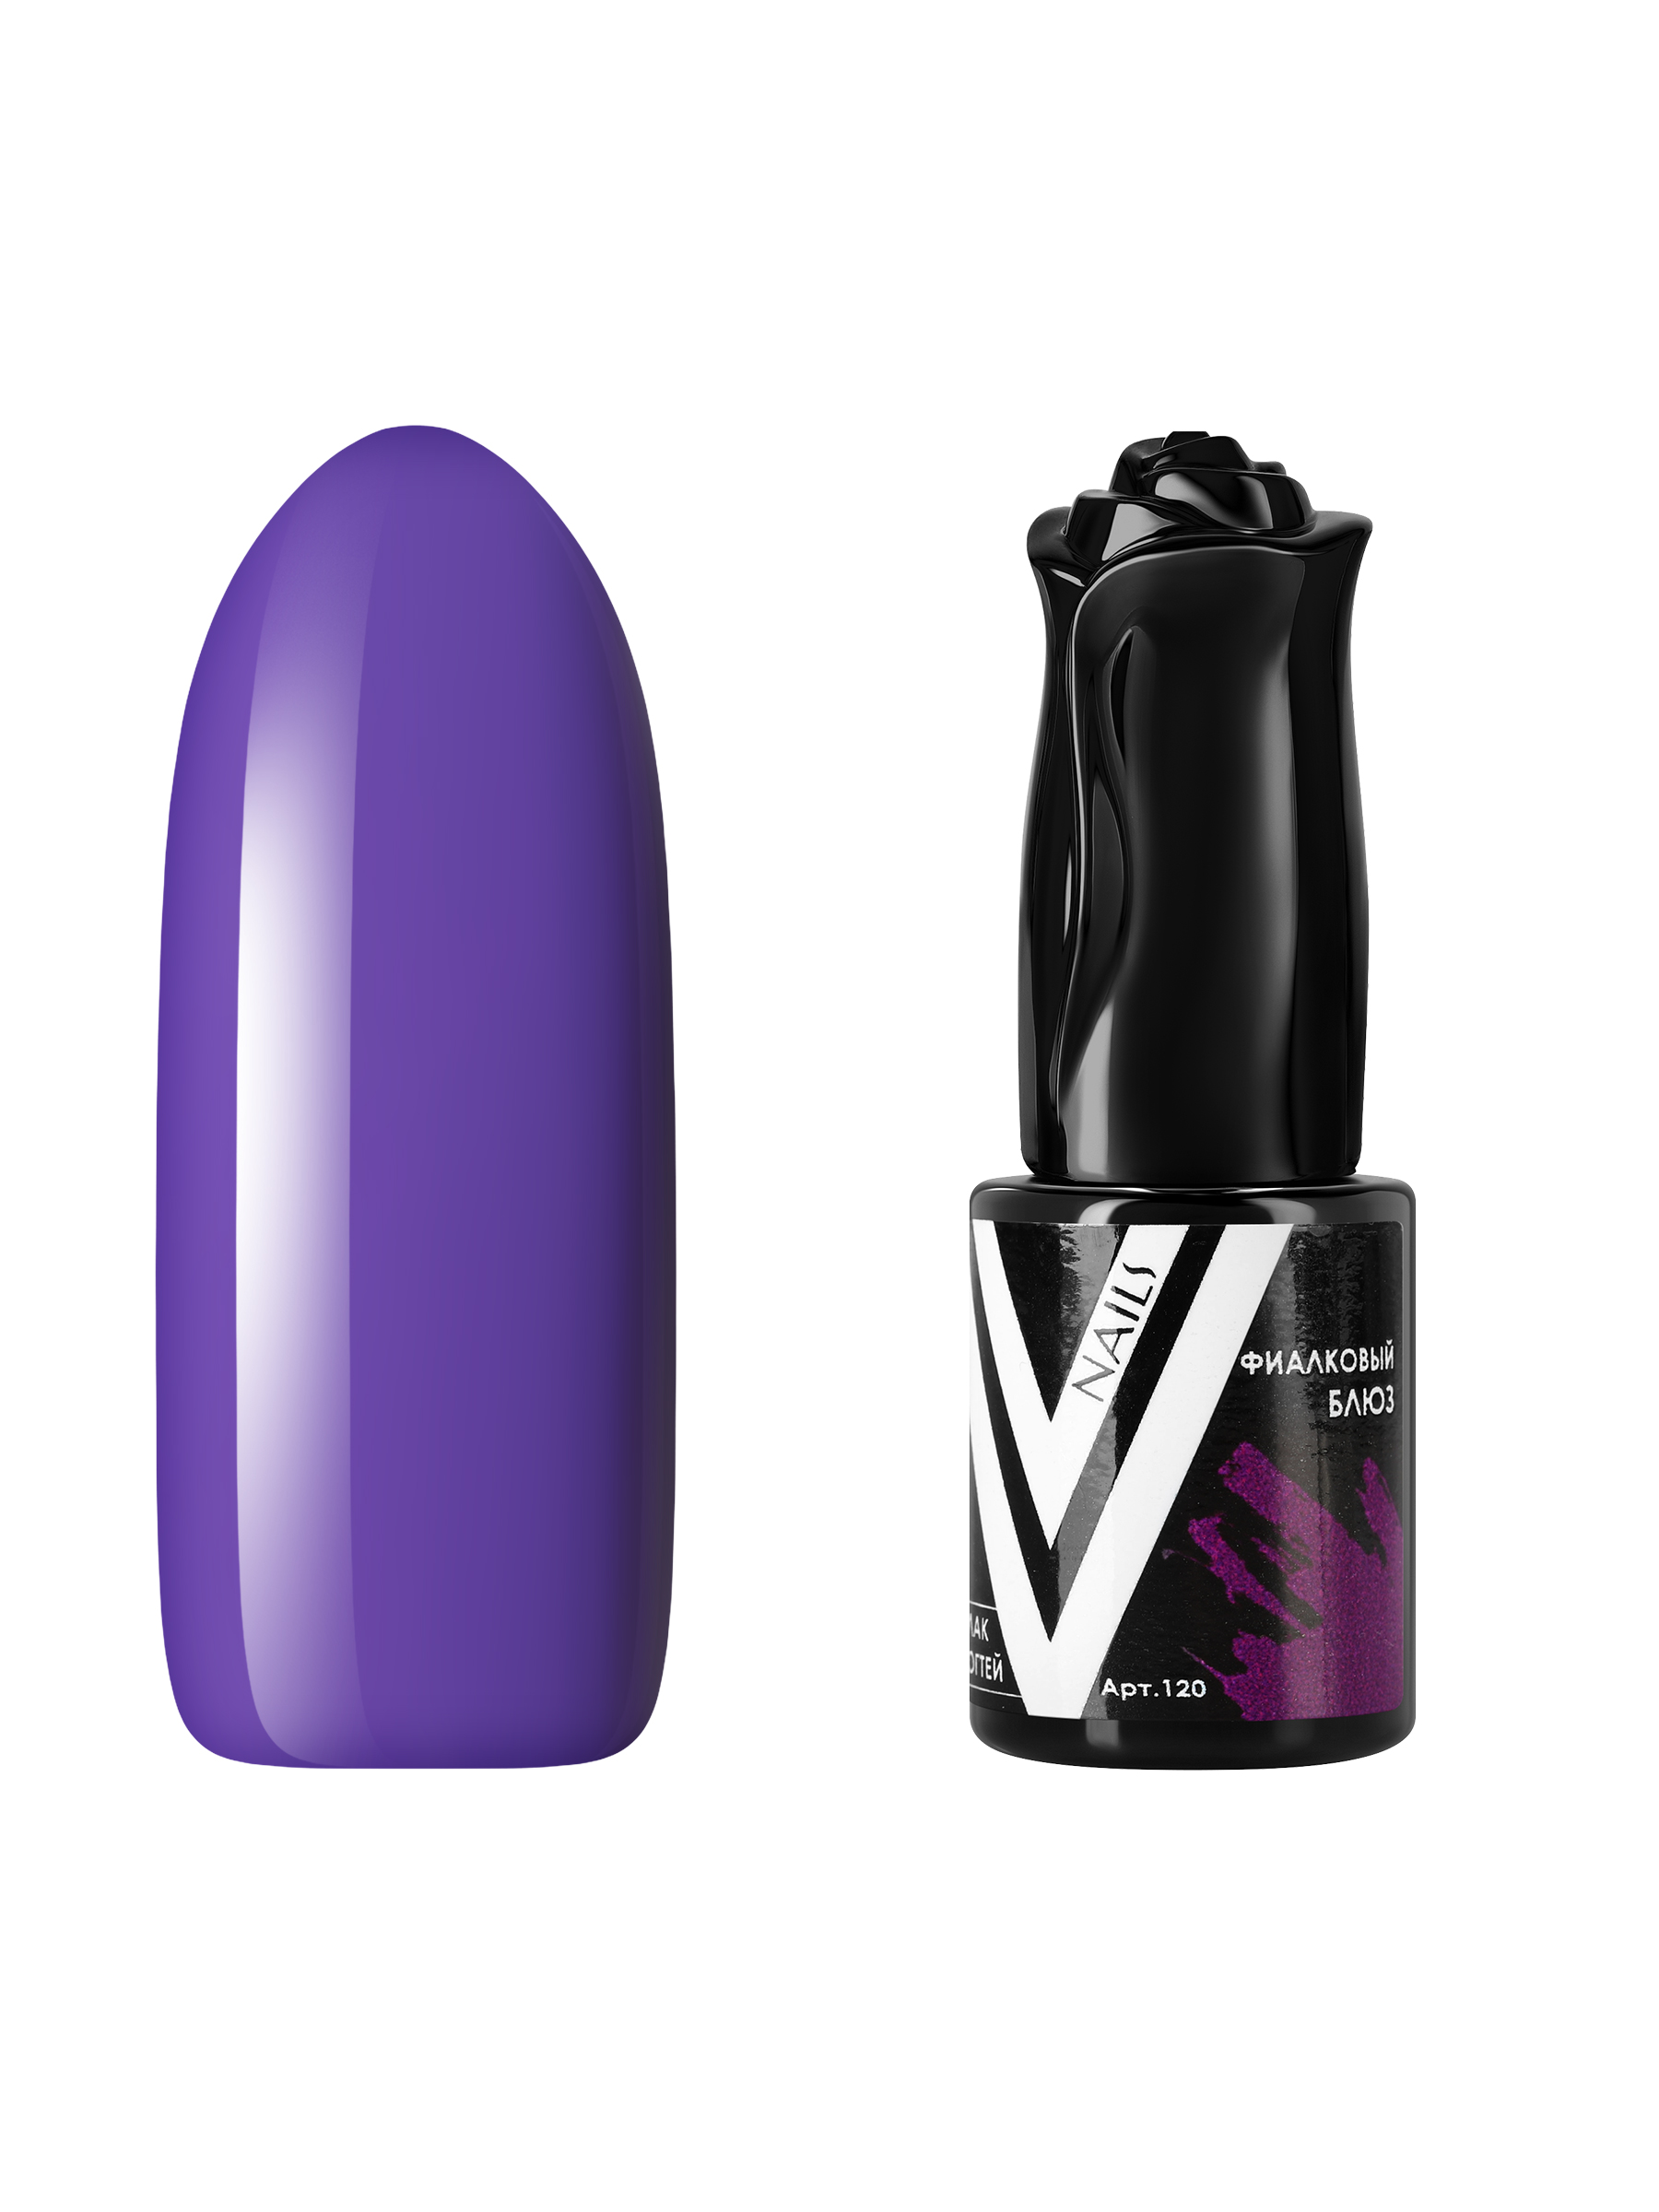 Гель-лак для ногтей Vogue Nails плотный самовыравнивающийся, темный фиолетовый, 10 мл гель лак с перламутром vogue nails кошачий глаз магнитный плотный темный фиолетовый 10 мл